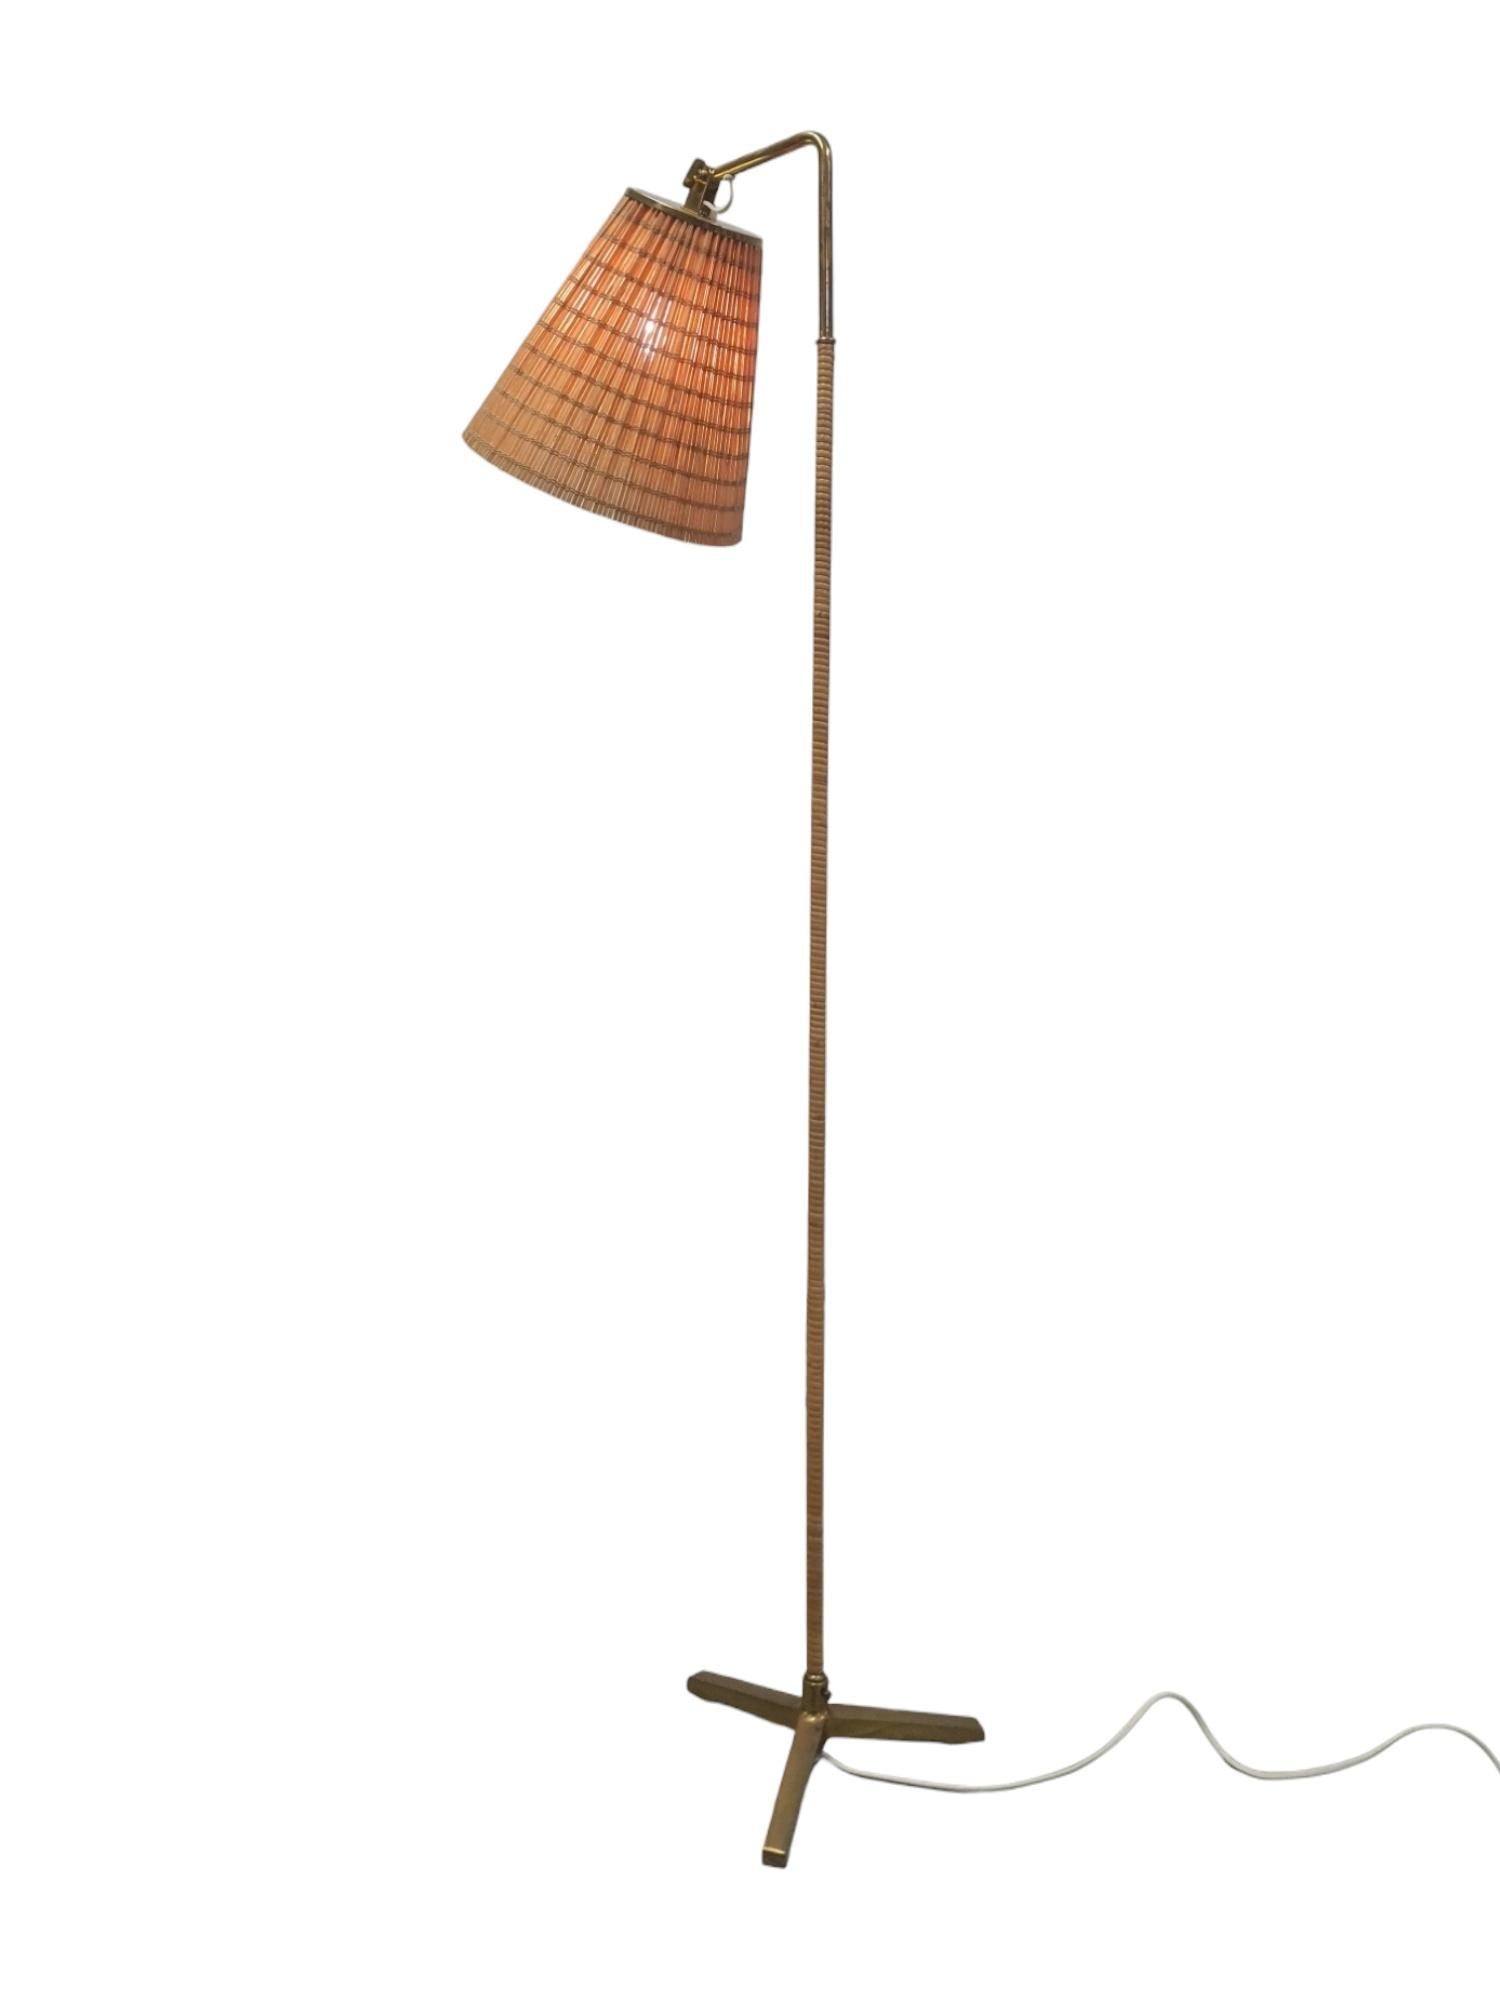 Finnish Paavo Tynell Floor Lamp Model 9631, Taito Oy